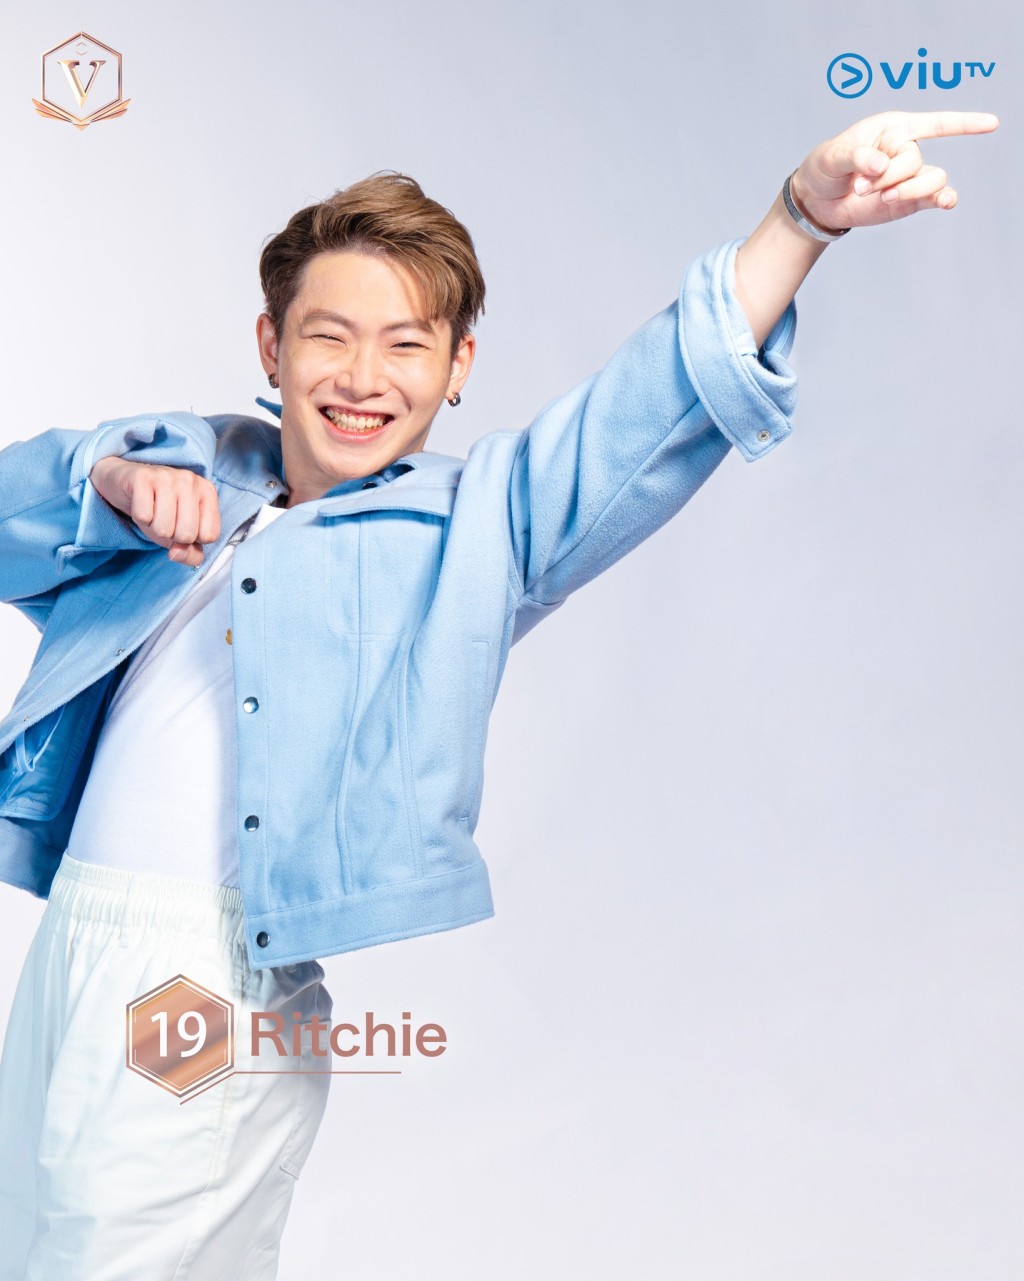 梁瑋城（Ritchie） 年齡： 25 職業： 審計師 擅長： 唱歌、寫歌 IG：ritchie_leong #吉隆坡參賽者